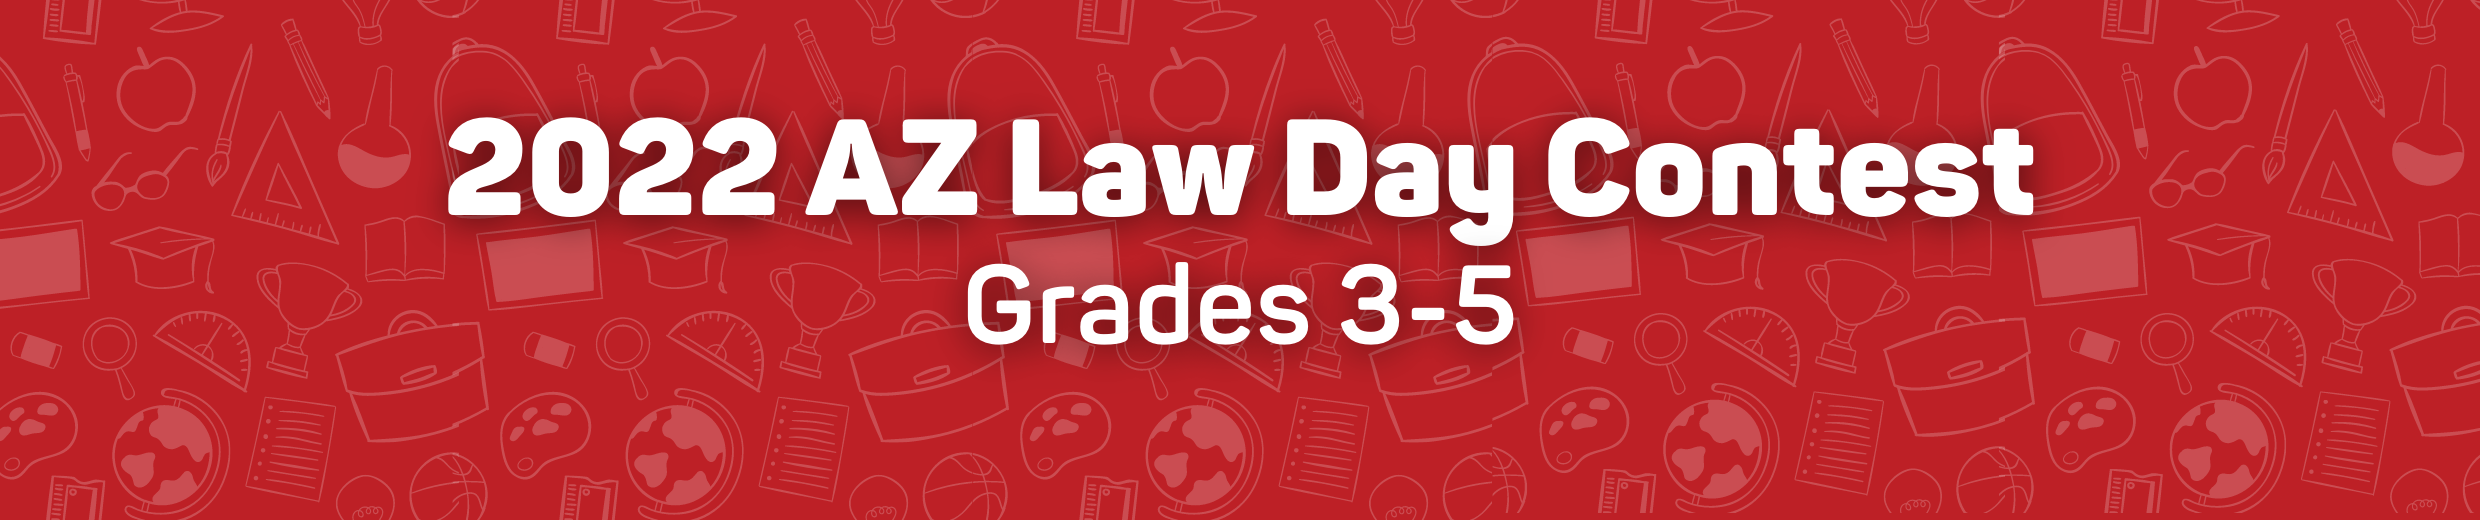 2022 Law Day Contest Grades 3-5